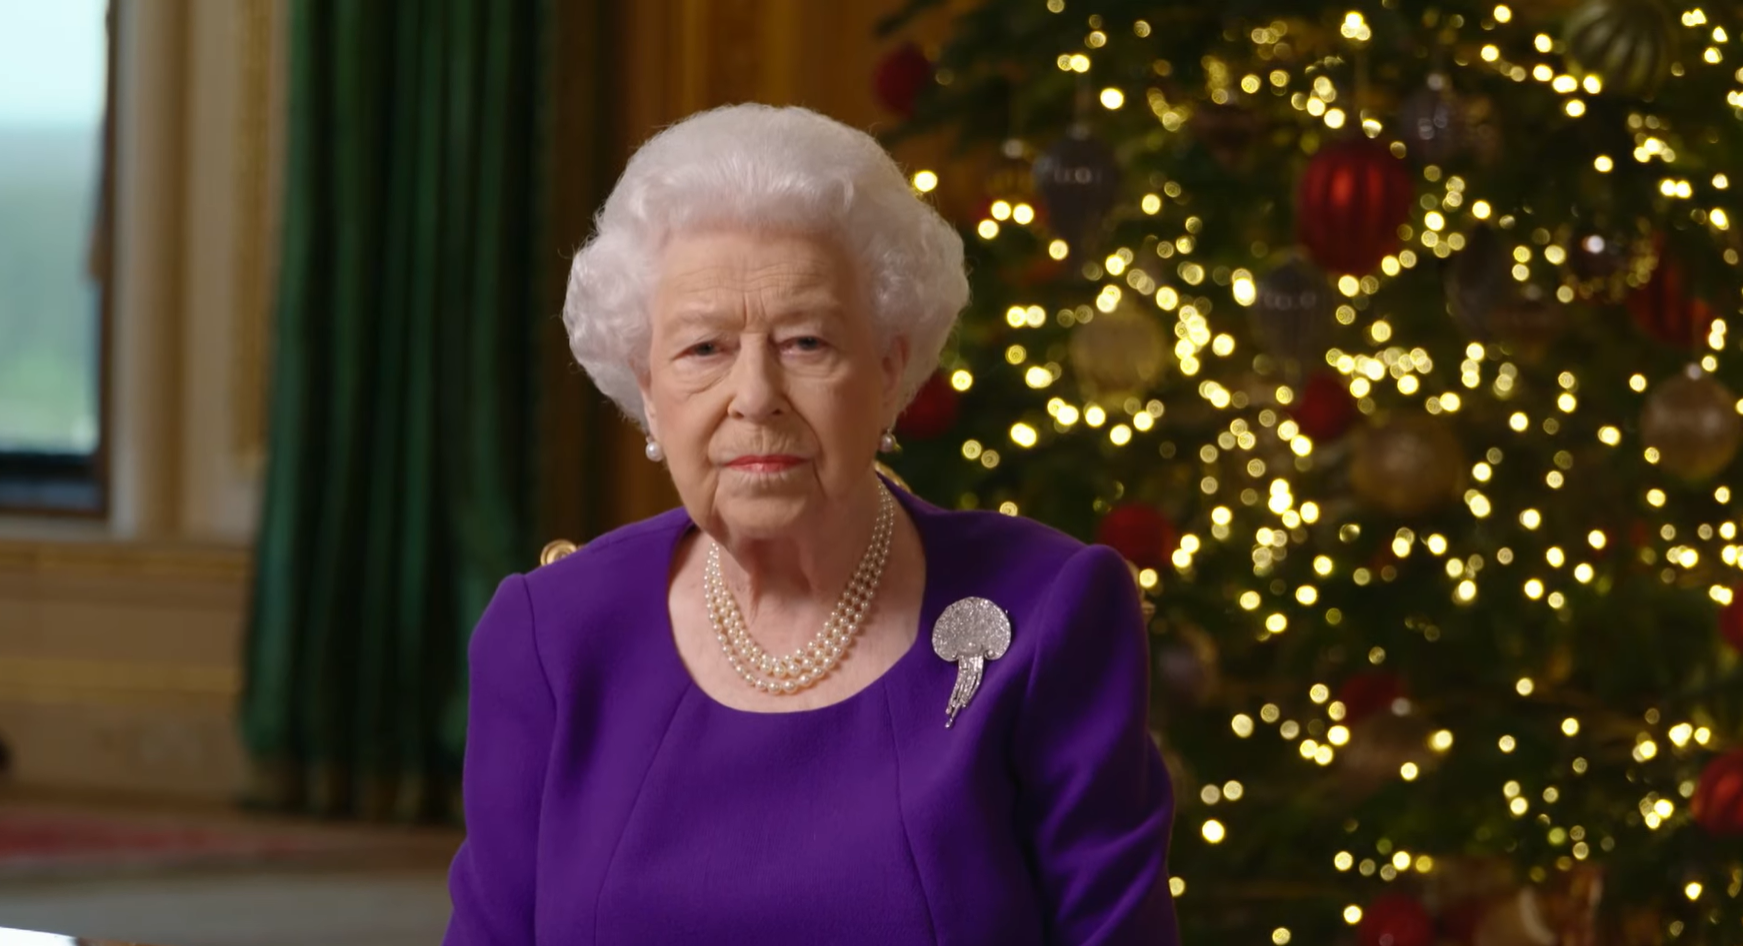 «Цей рік насправді зблизив нас»: королева Єлизавета II звернулася до нації